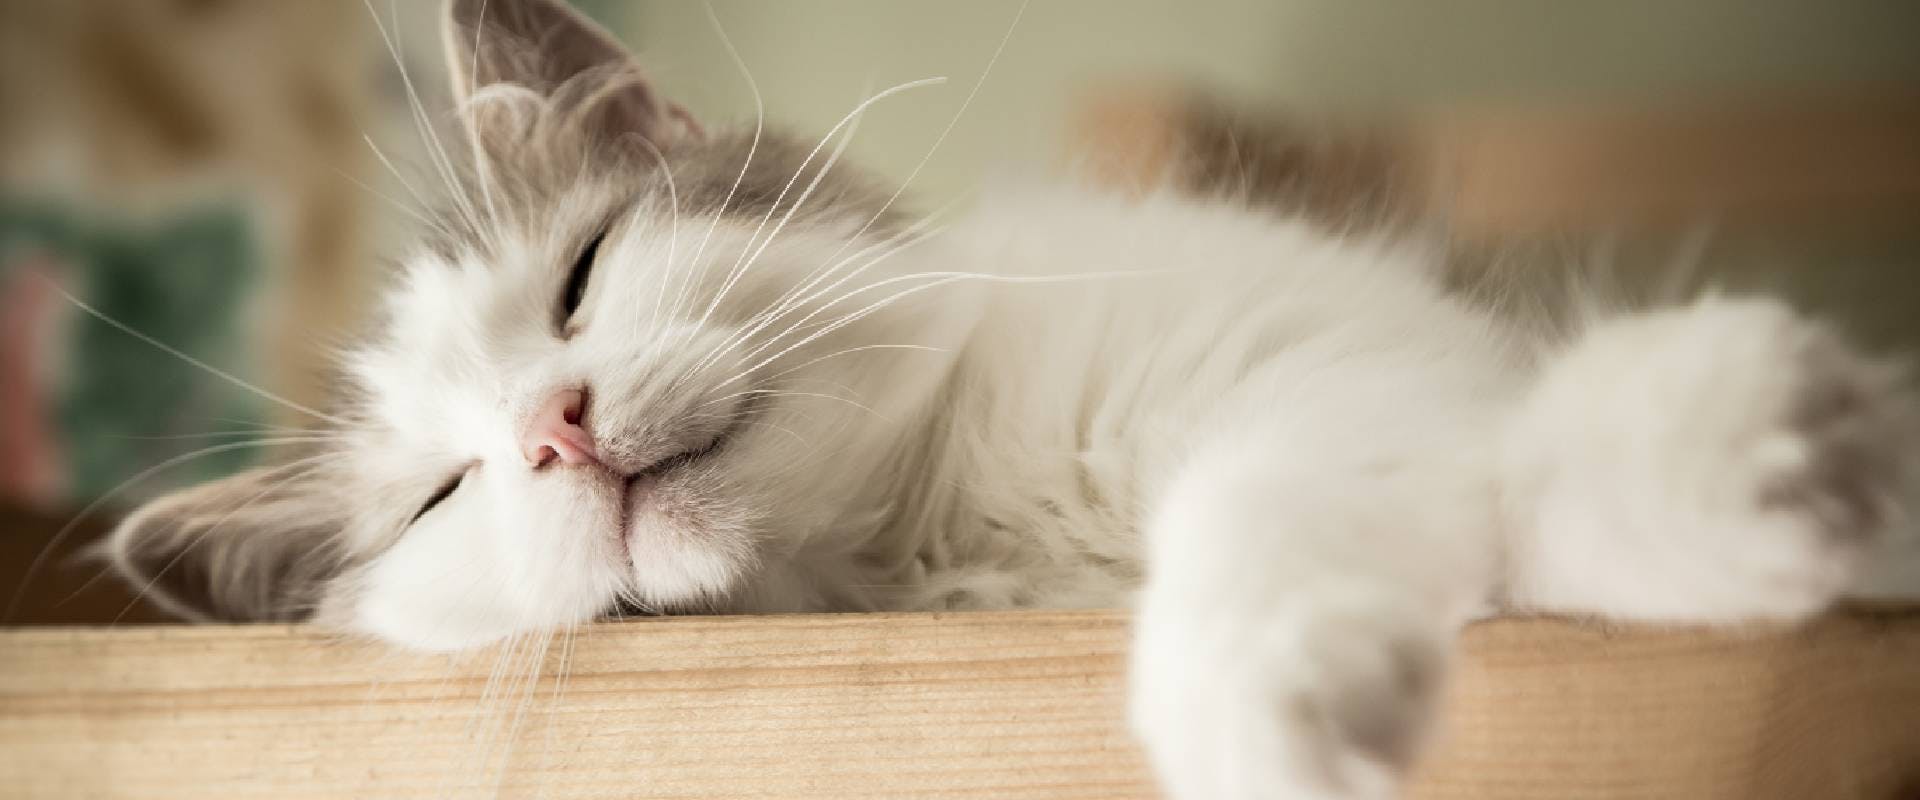 Sleeping white and gray cat